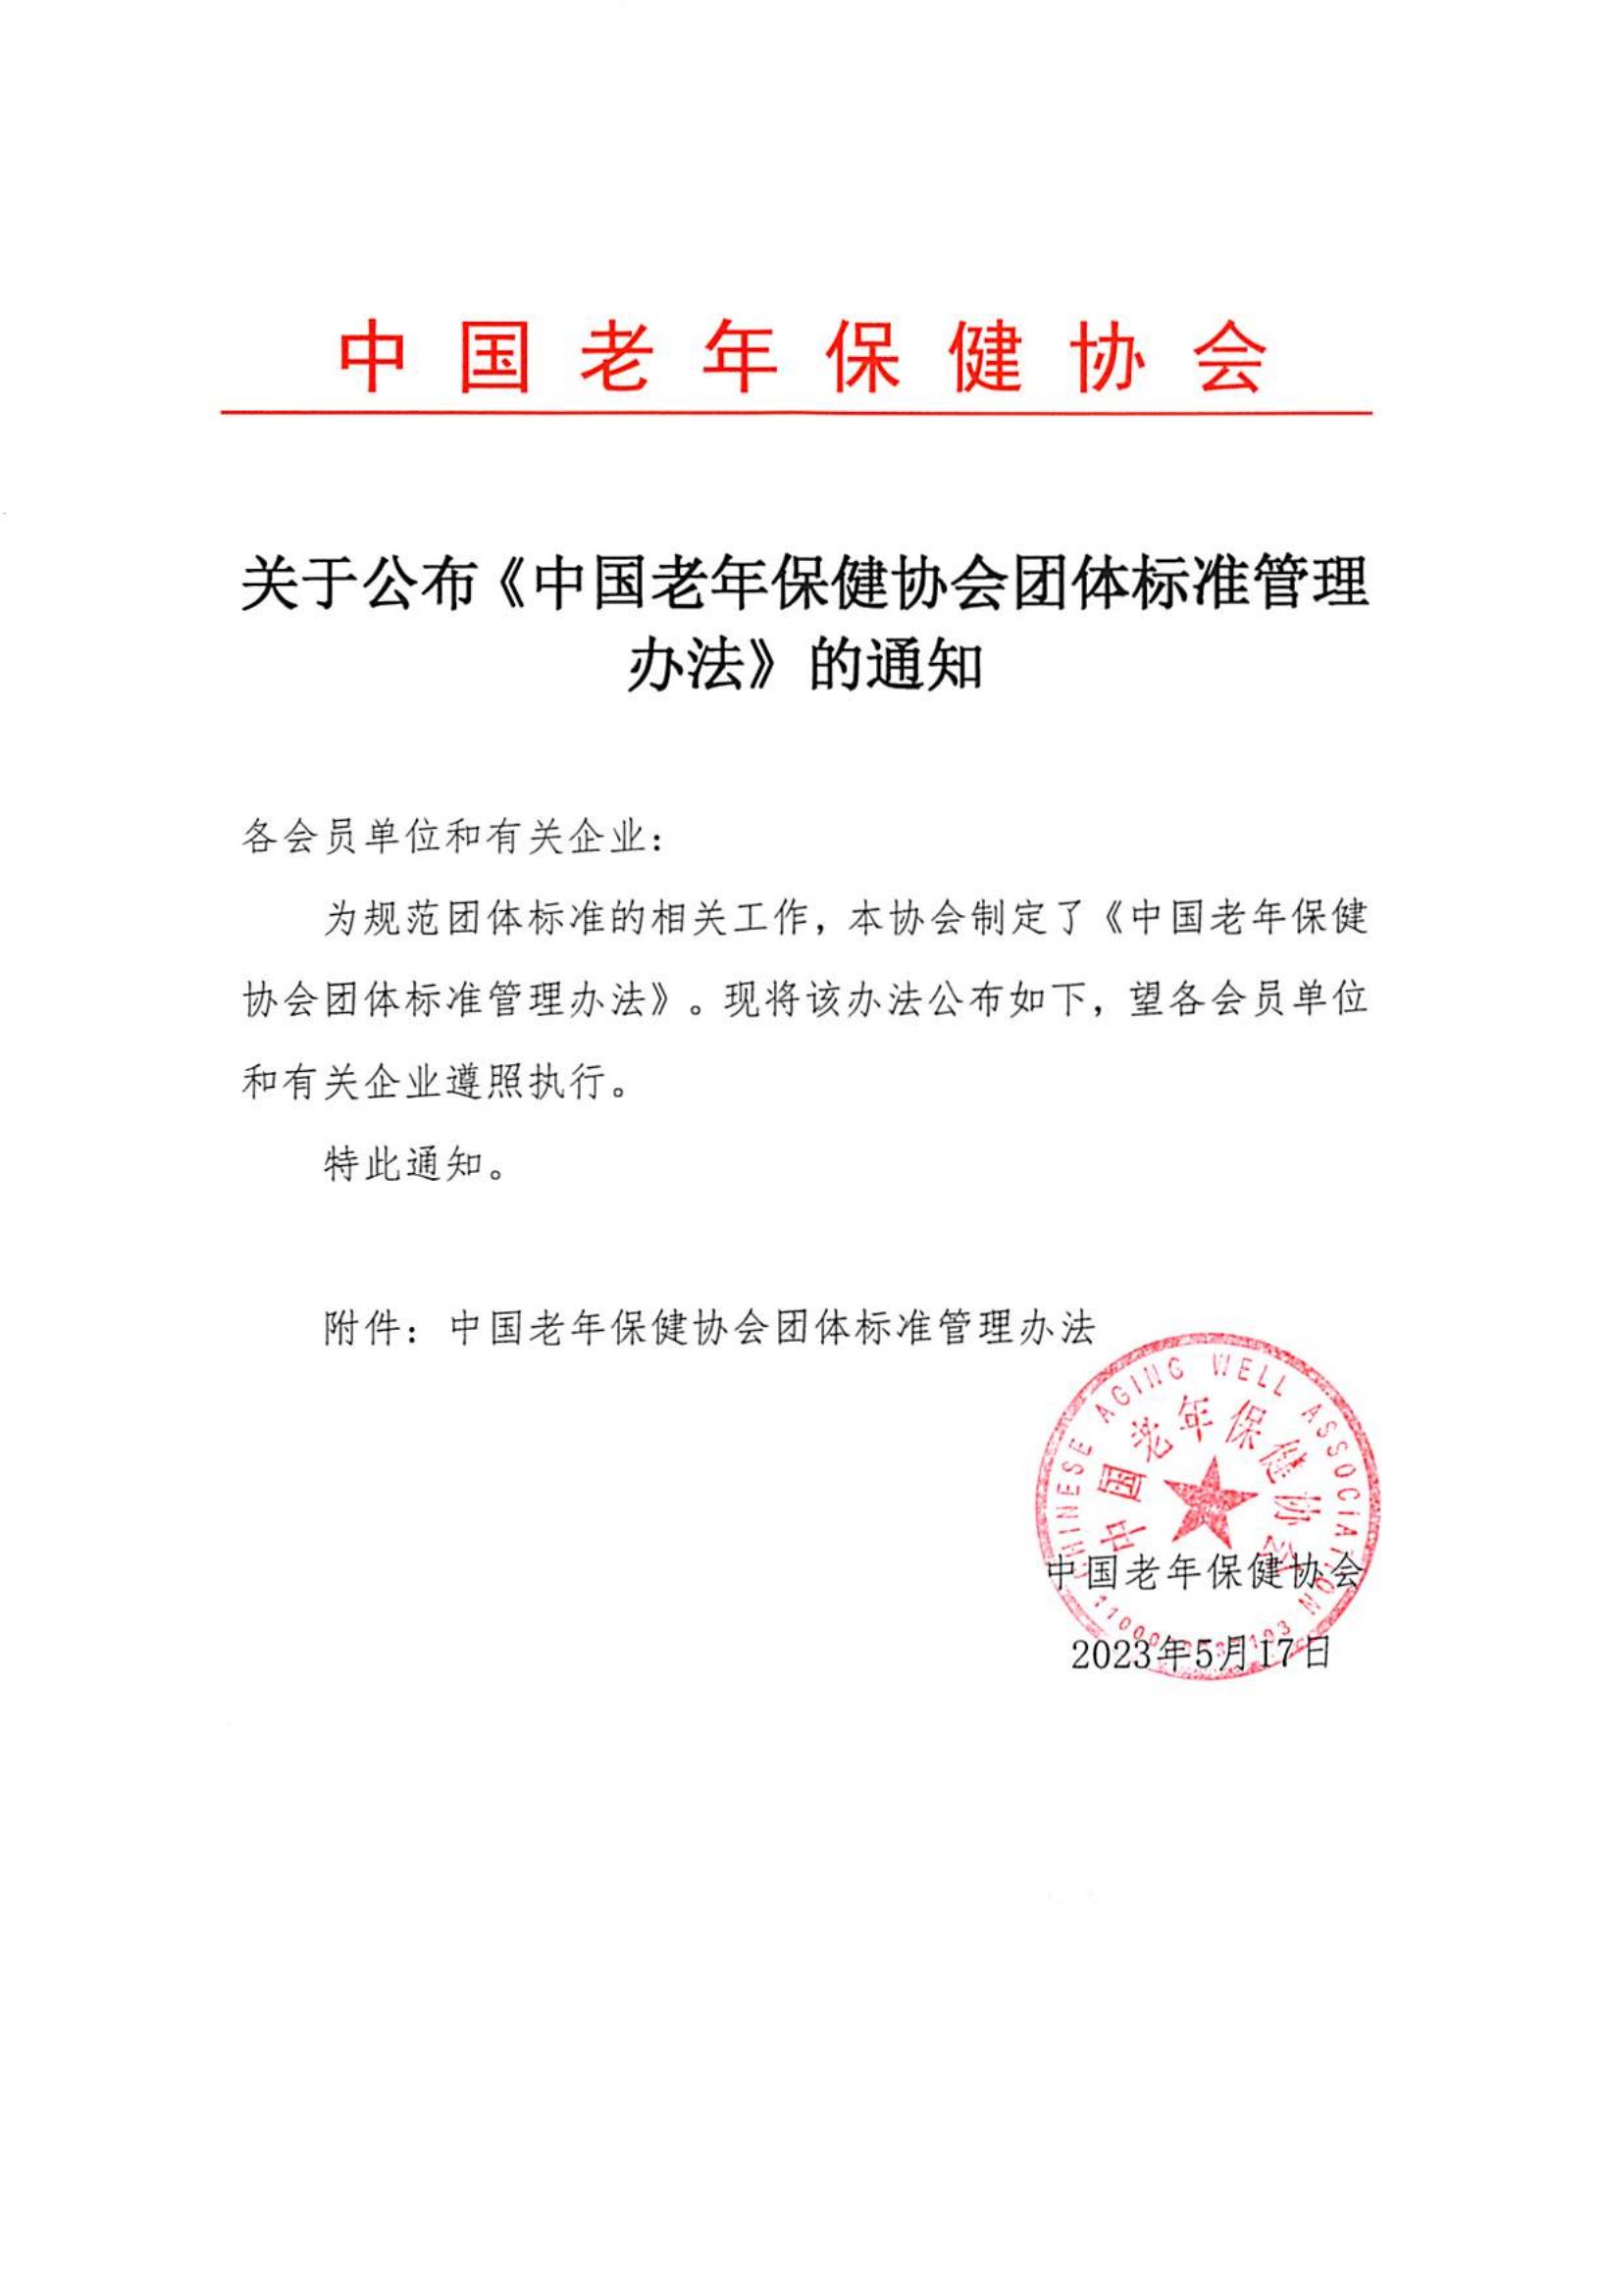 关于公布《中国老年保健协会团体标准管理办法》的通知_00.jpg